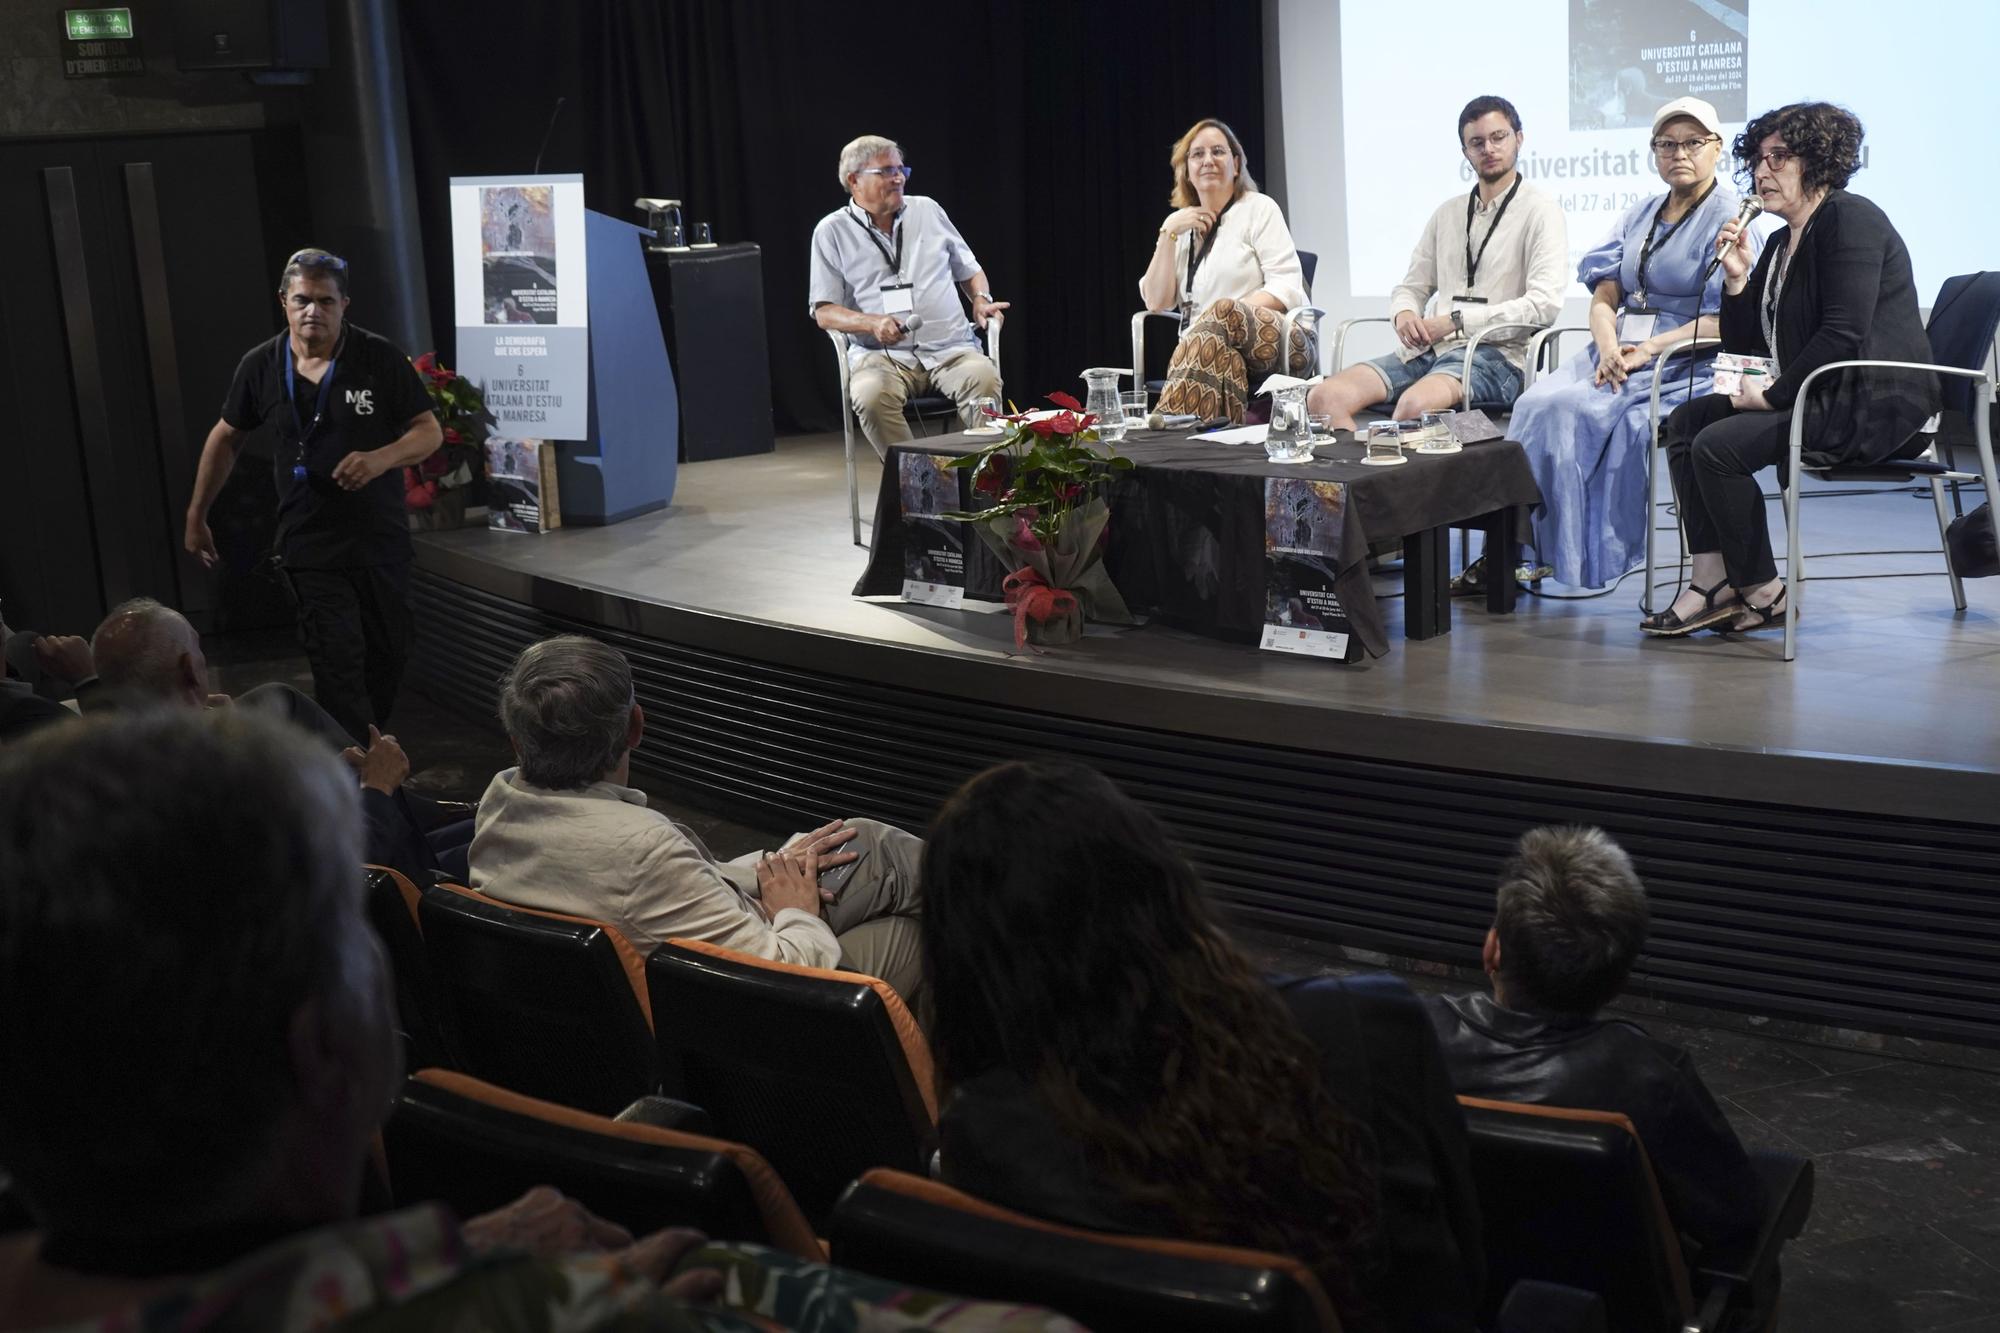 La Universitat Catalana d'Estiu clou la seva millor edició a Manresa
